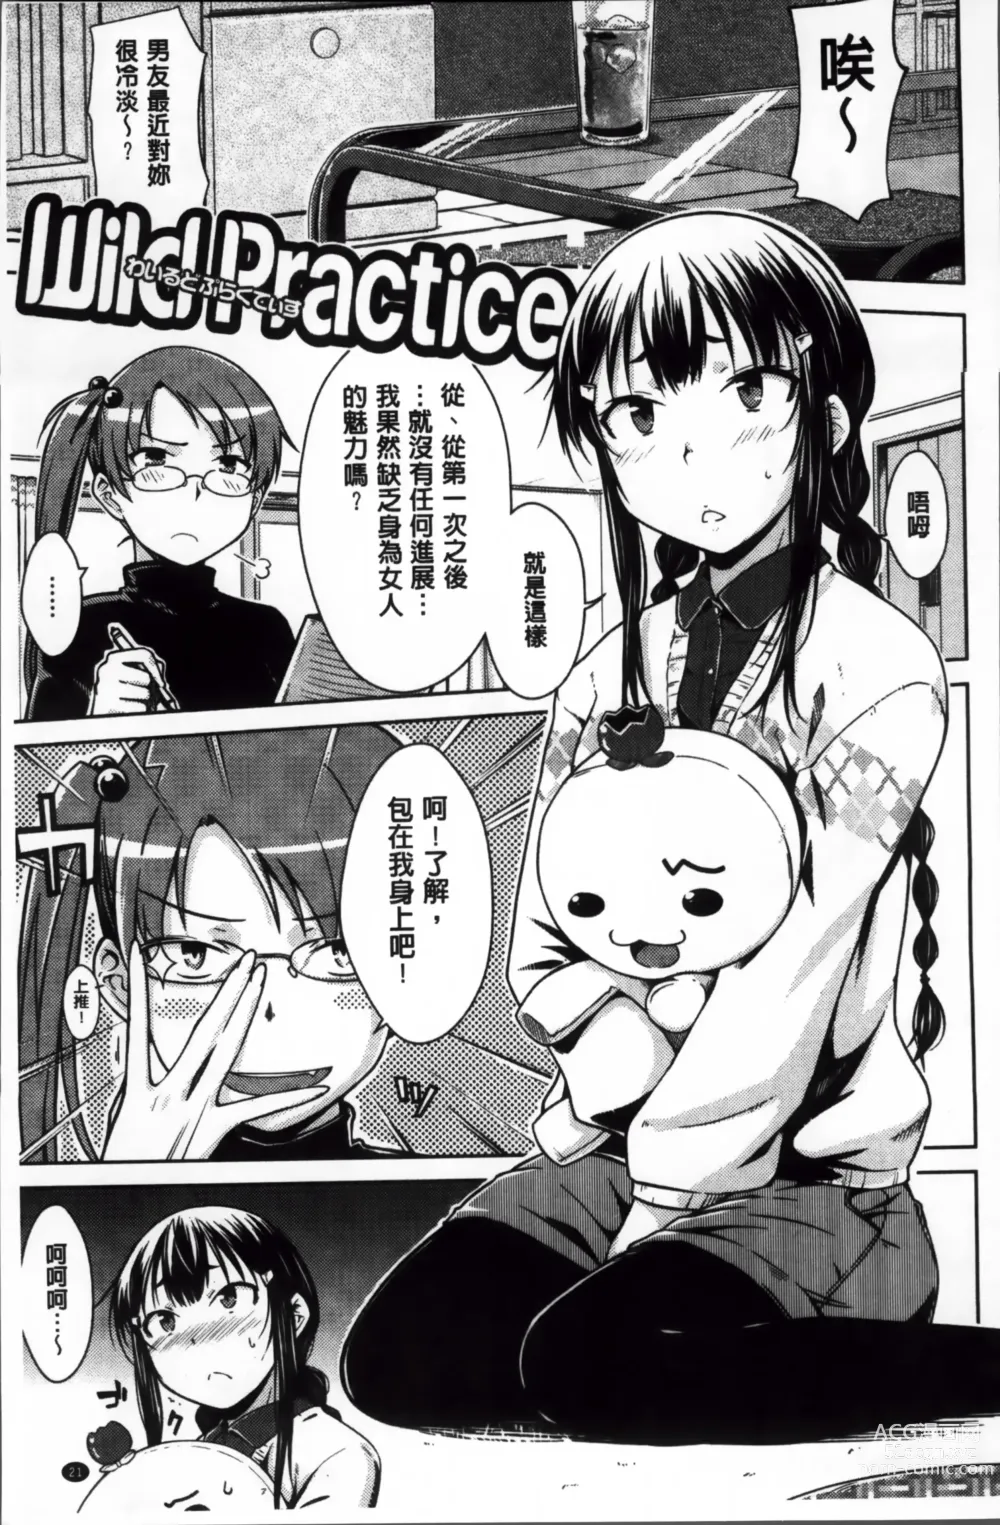 Page 29 of manga Gentei Kanojo